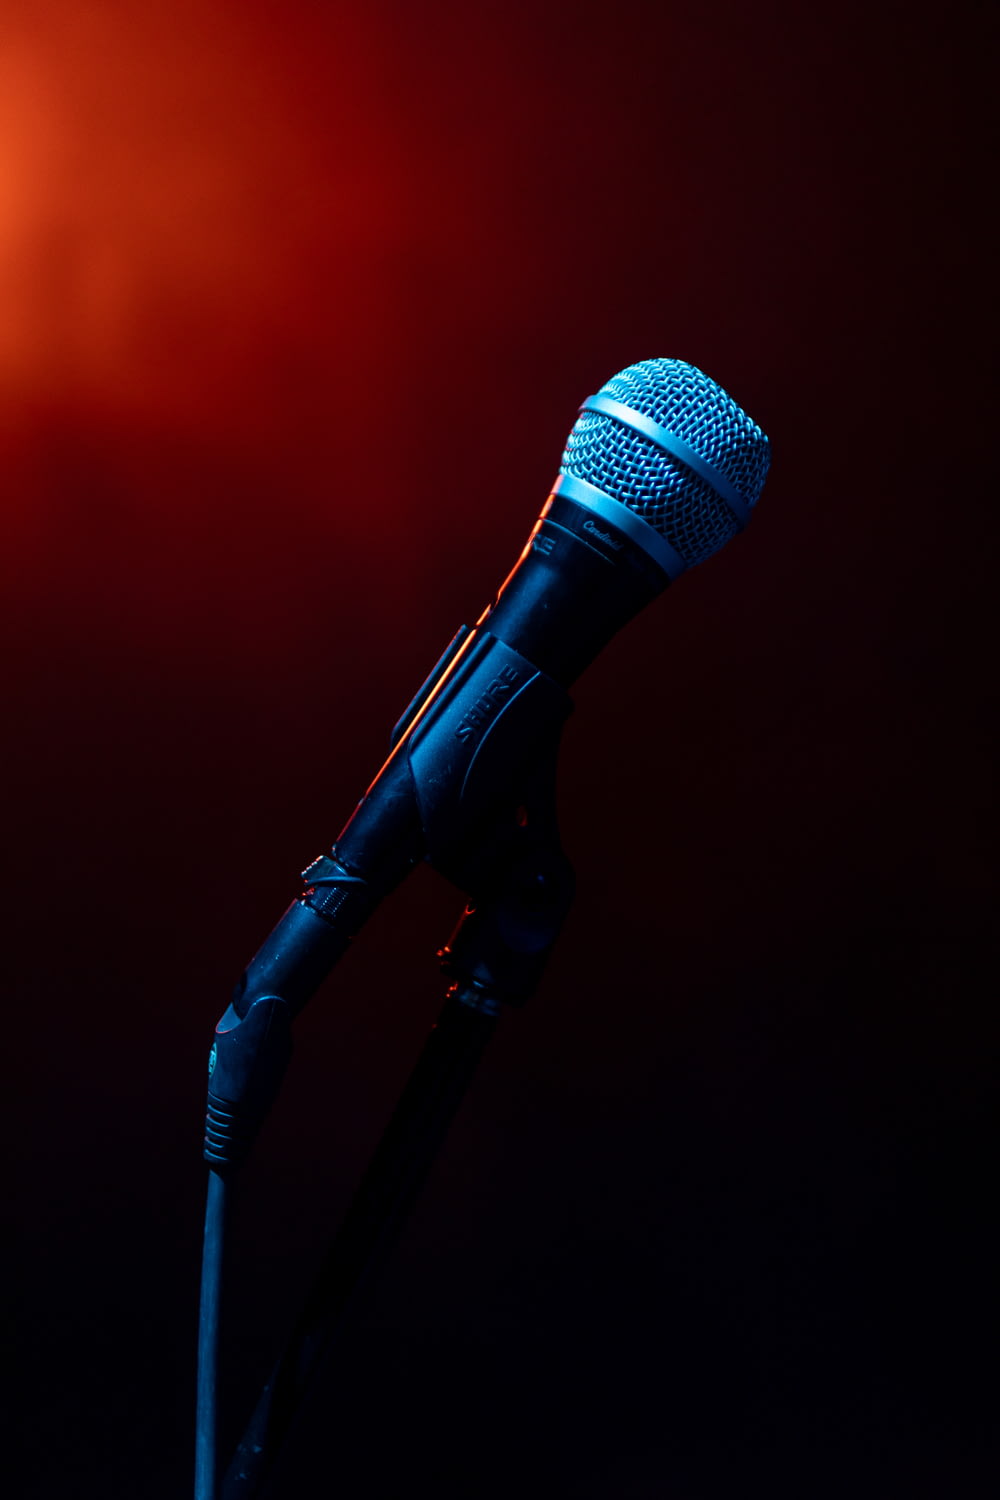 microfone preto no suporte de microfone preto